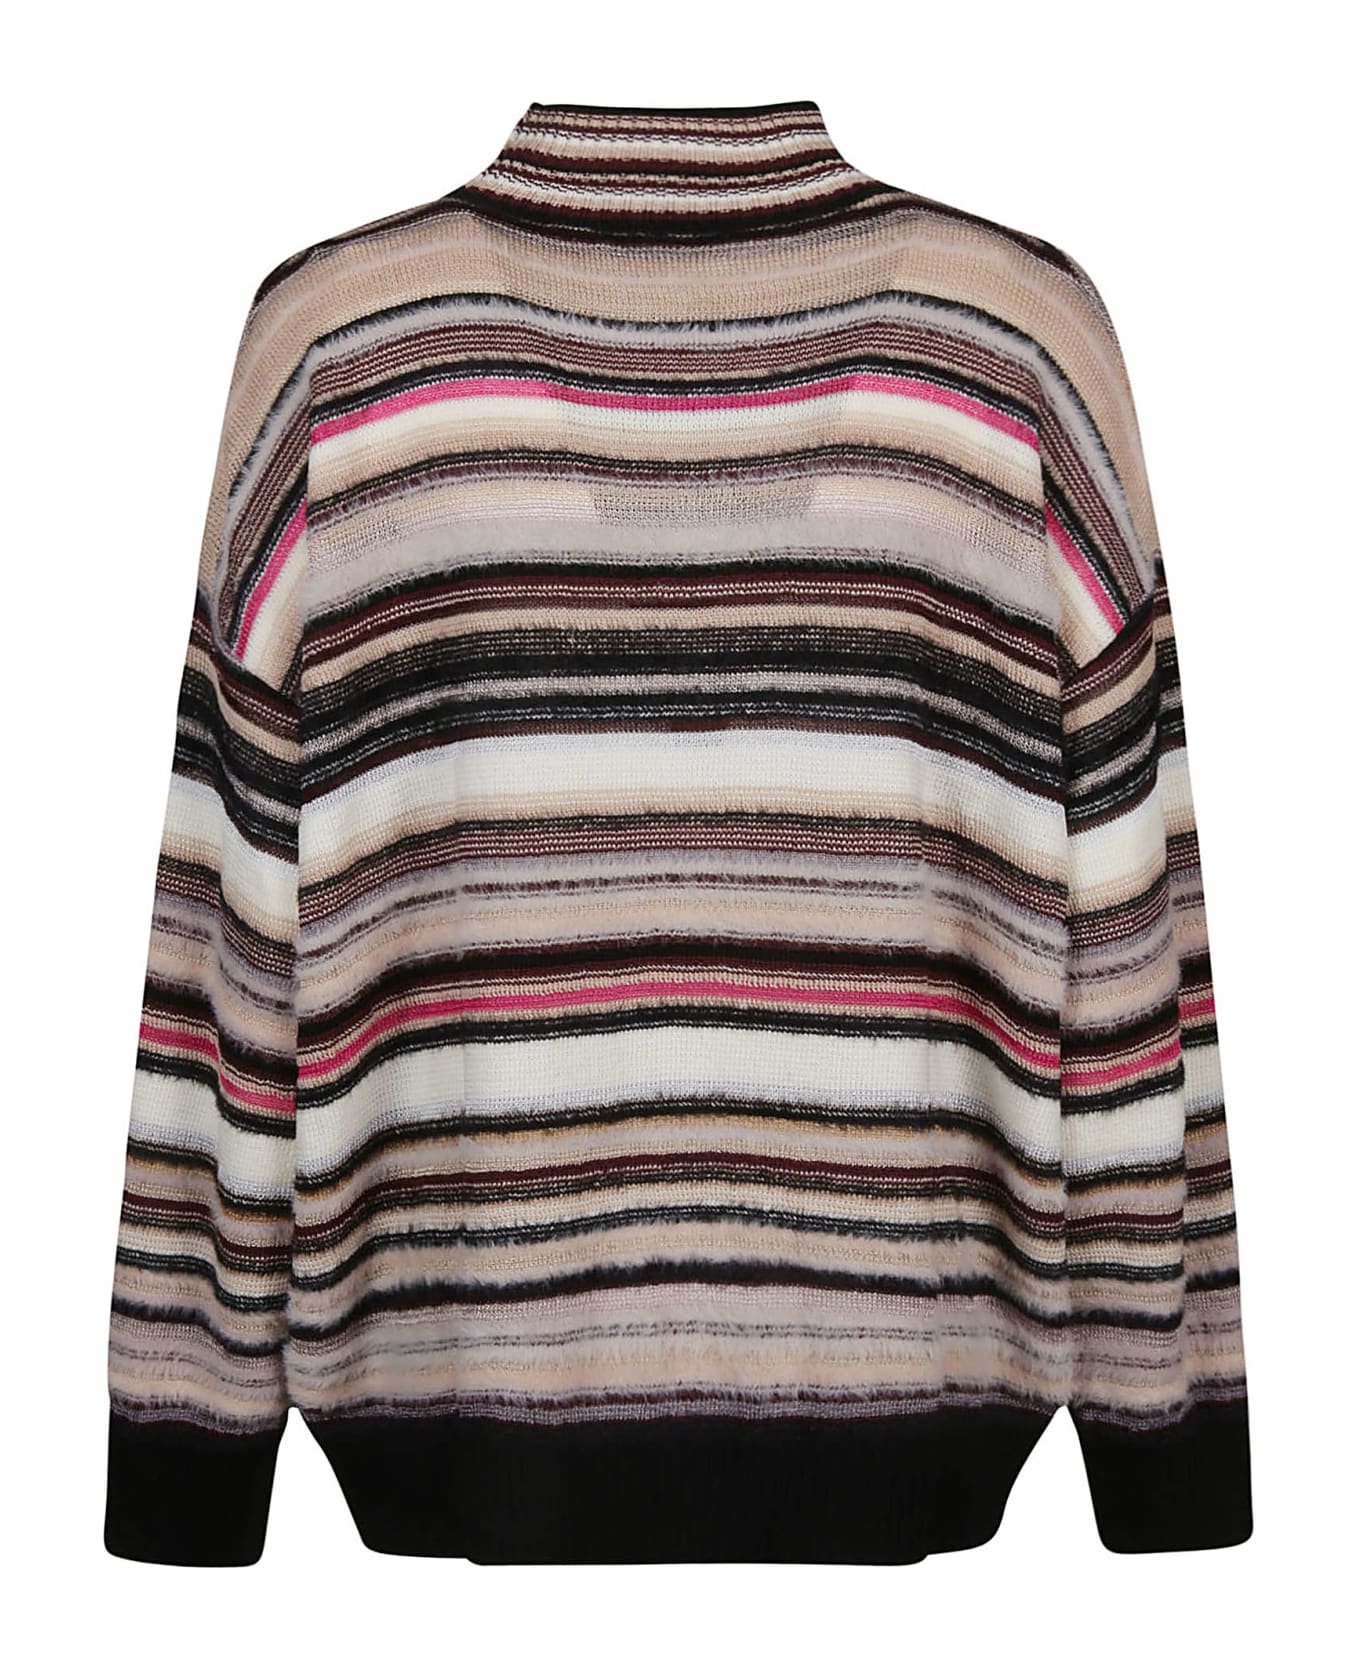 Missoni Turtle Neck Sweater - W Multicolor Beige/fucsia/nero ニットウェア